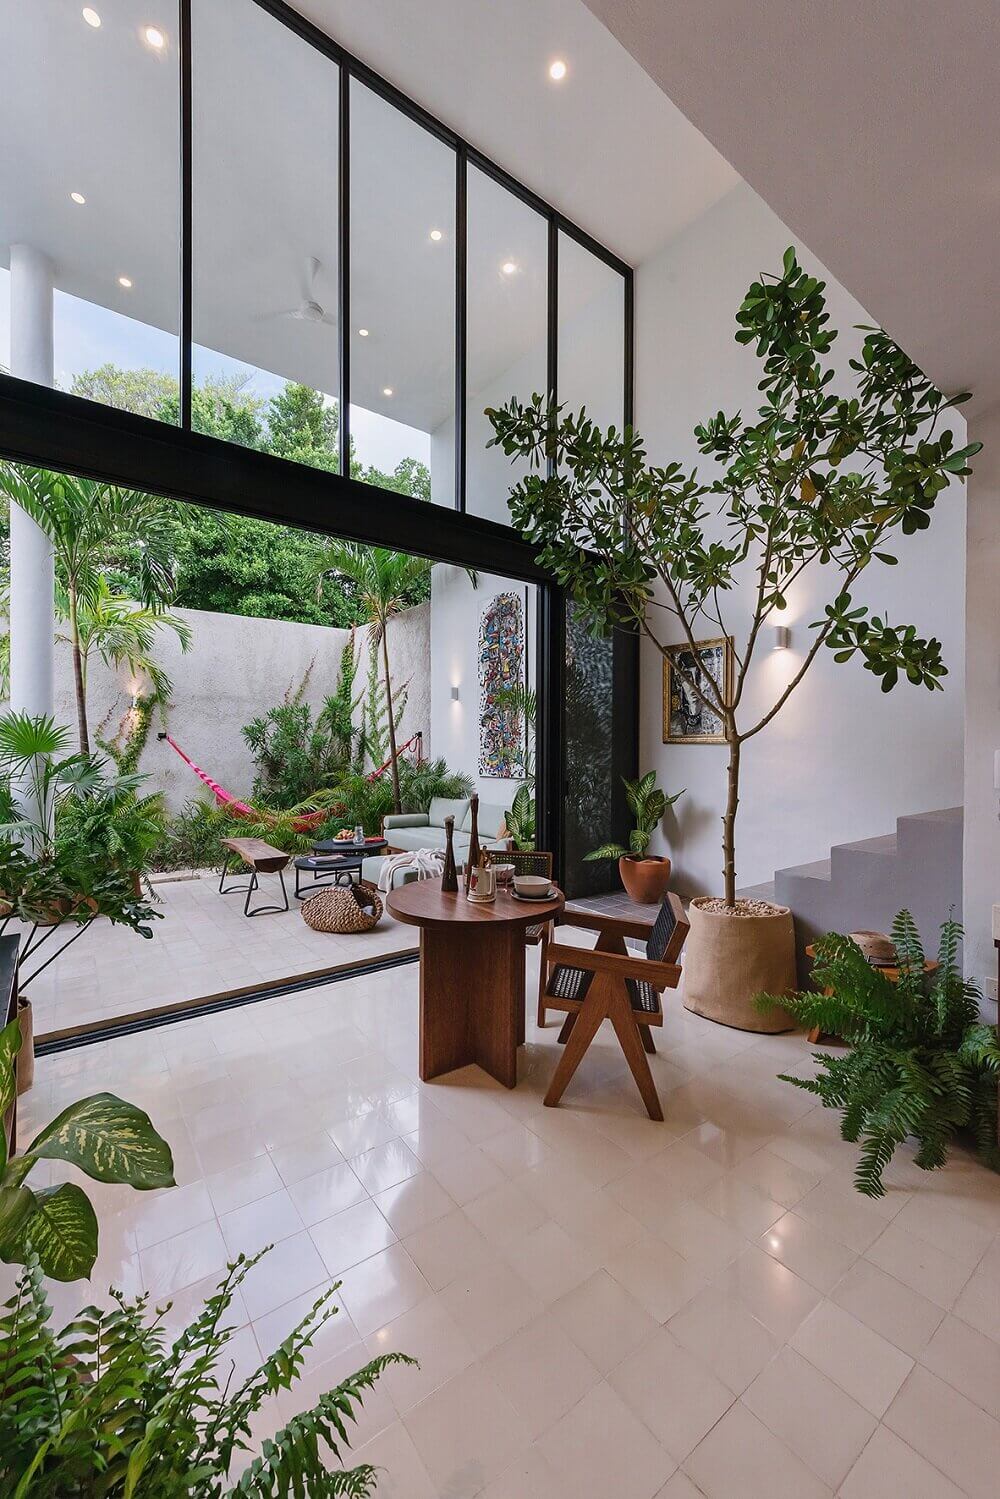 CasaHannah AnArchitecturalVillainMexico TheNordroom6 Casa Hannah | An Architectural Indoor/Outdoor Villa in Mexico